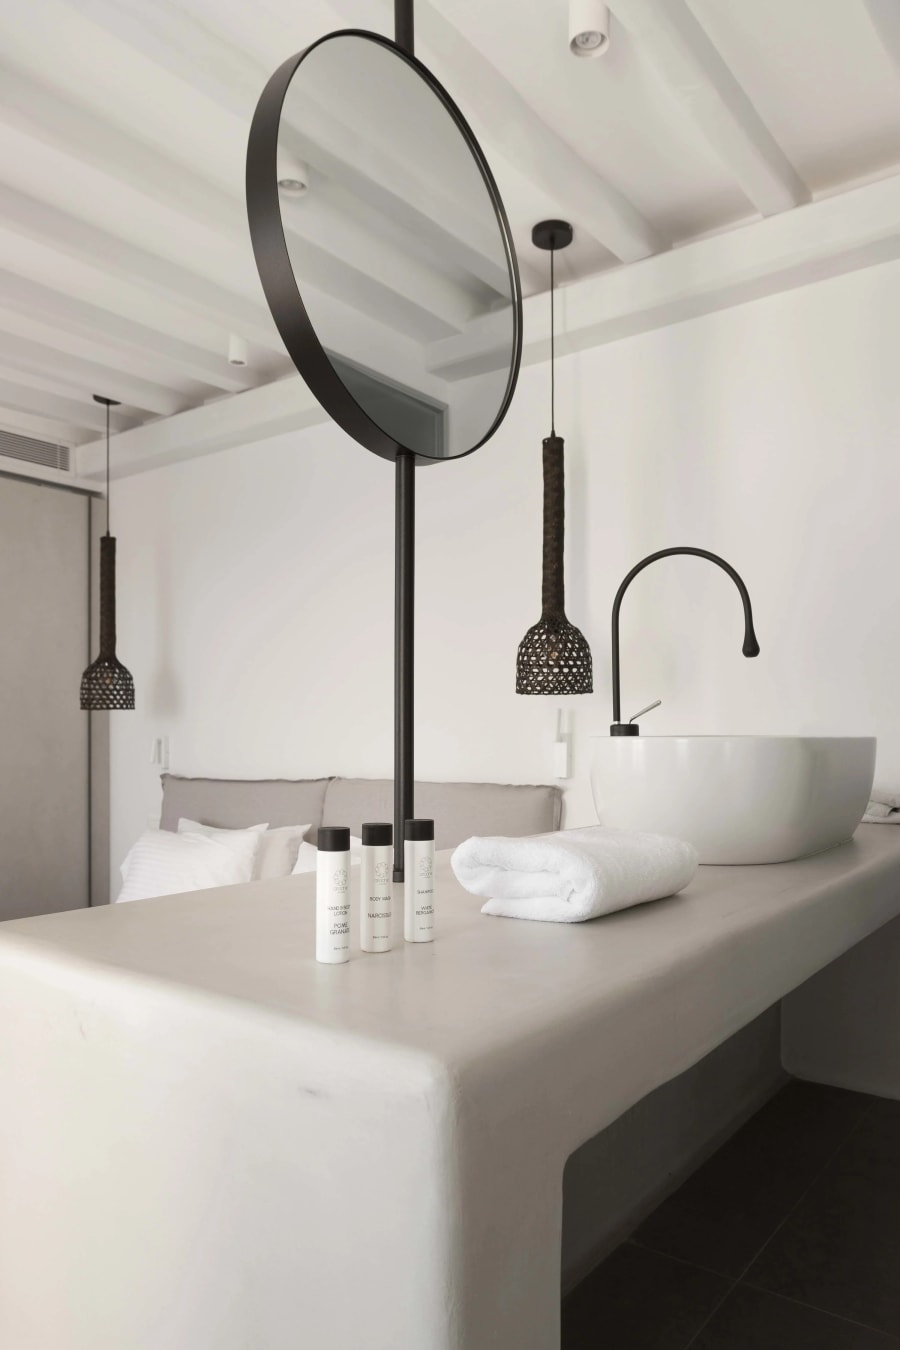 Silk Shadow | Mykonos, Greece | Luxury Real Estate | Concierge Auctions